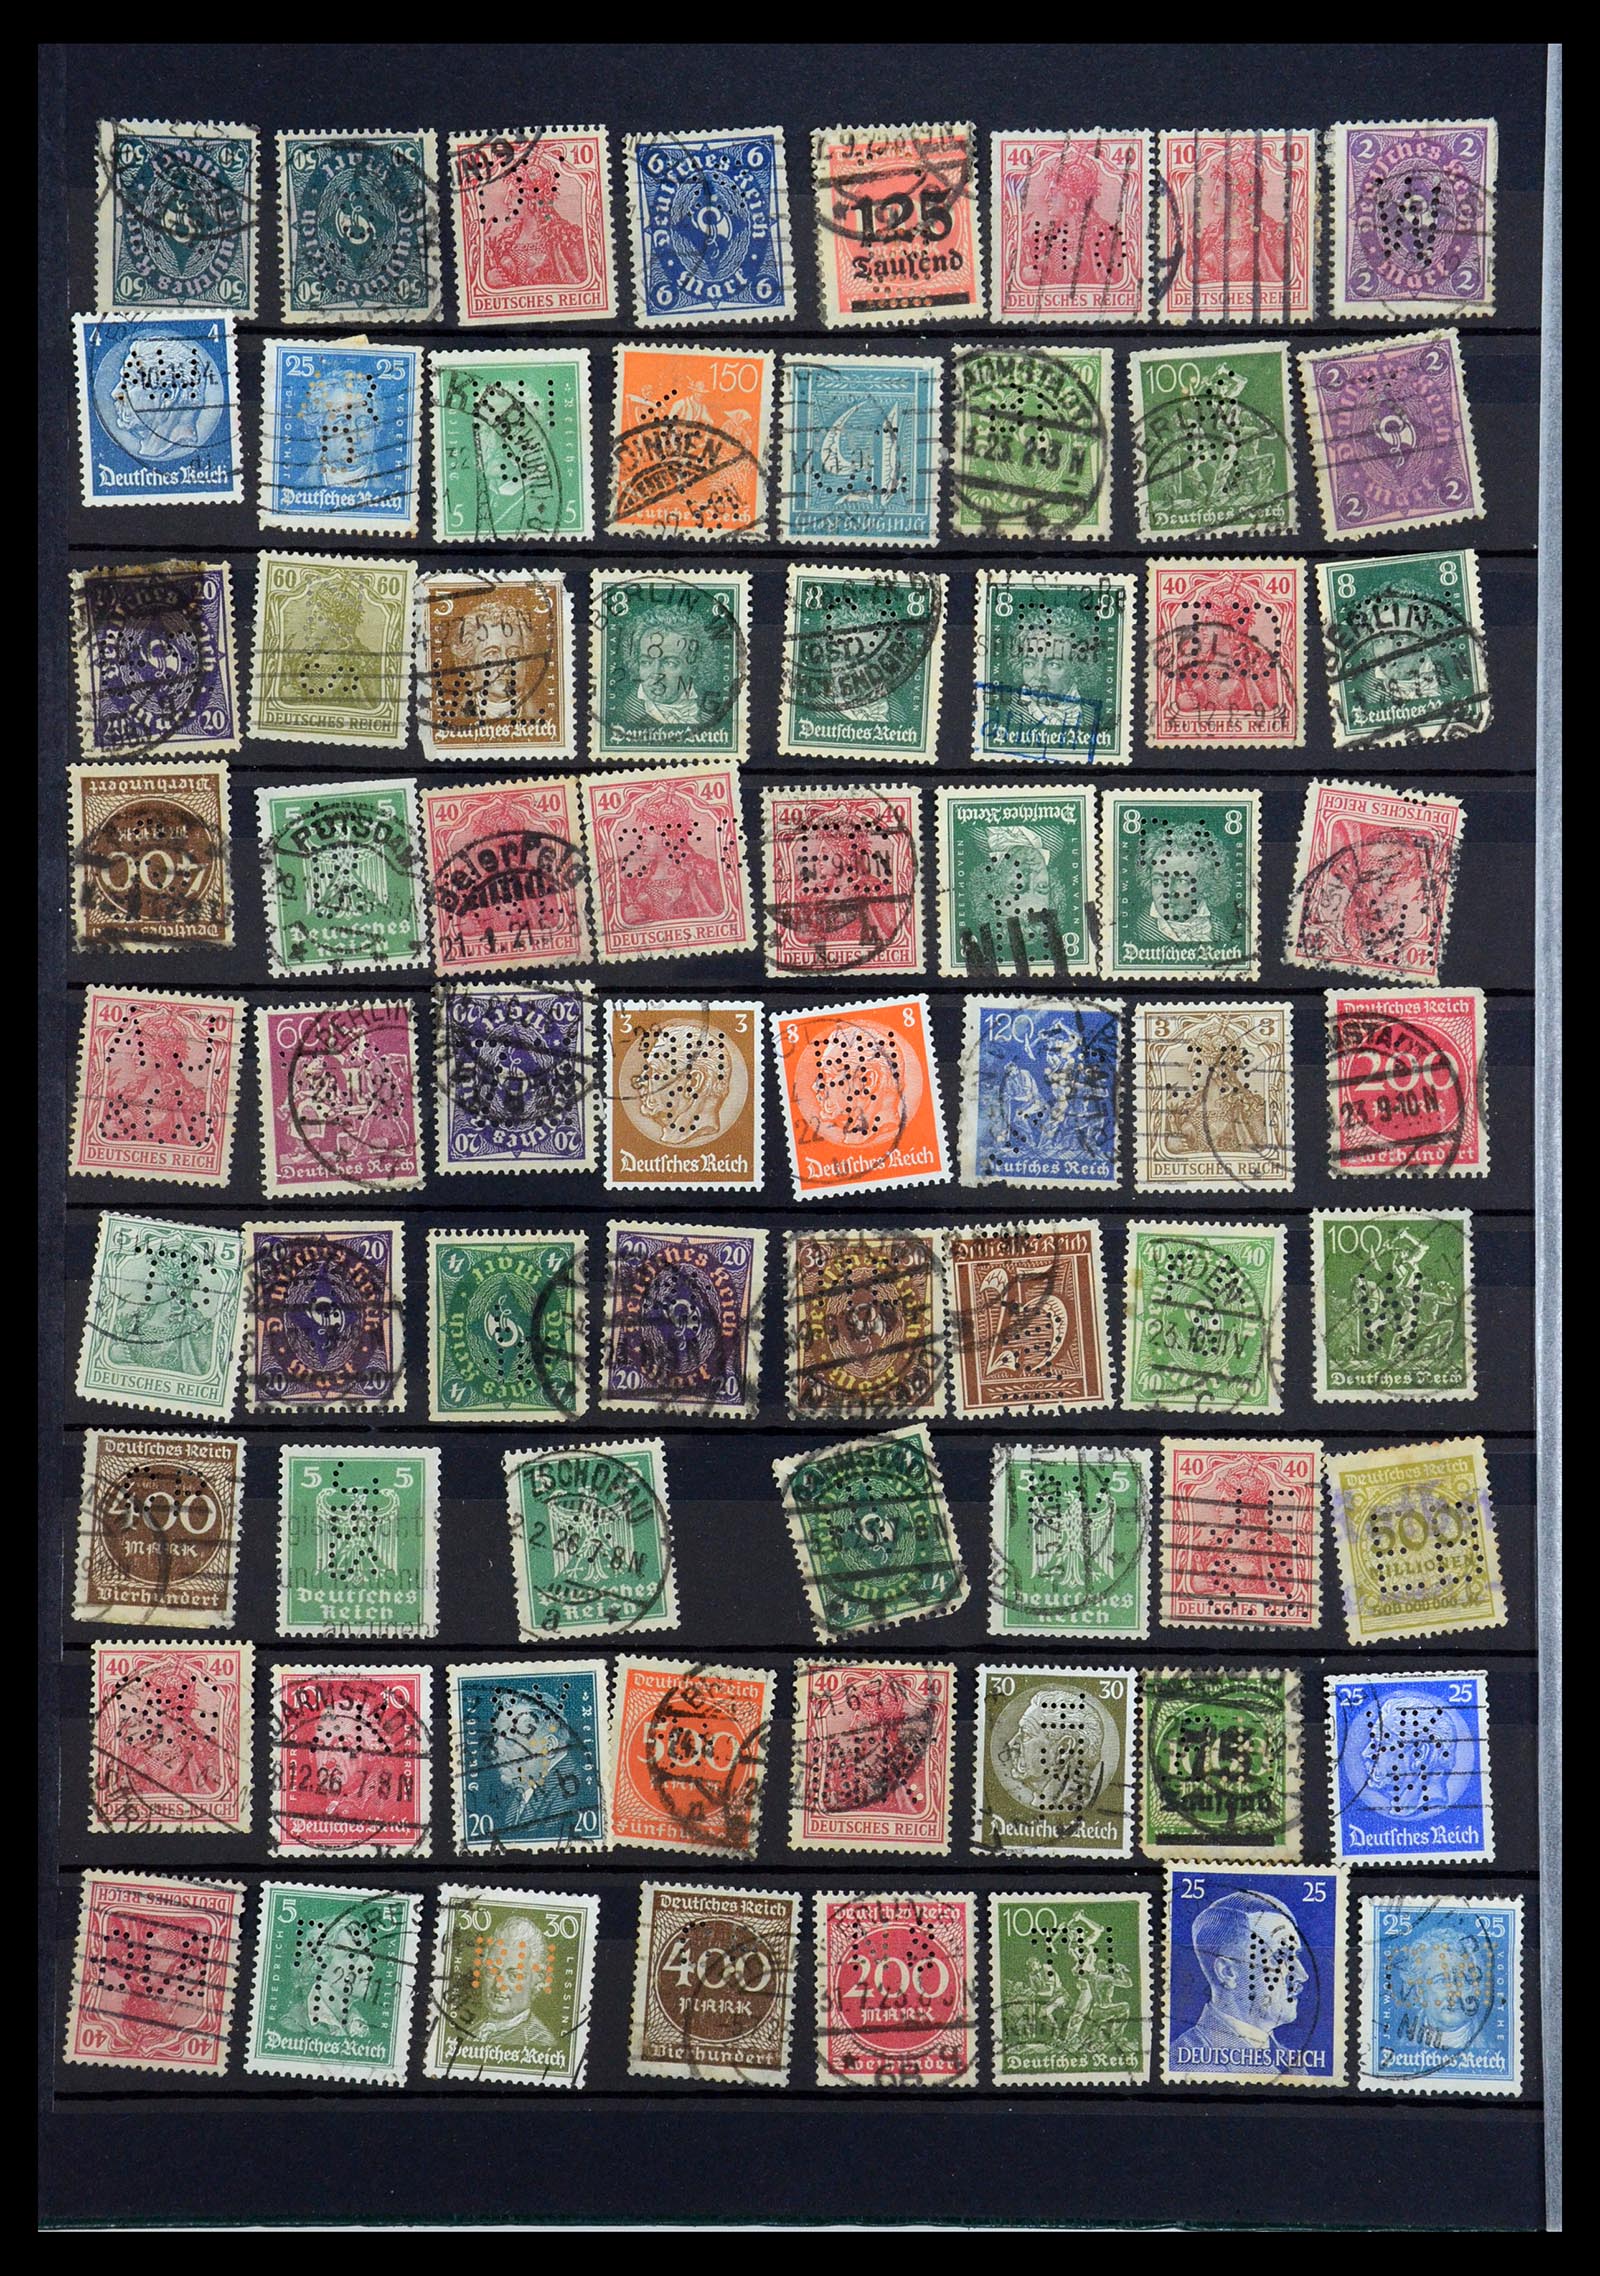 35183 012 - Stamp Collection 35183 German Reich perfins 1880-1945.